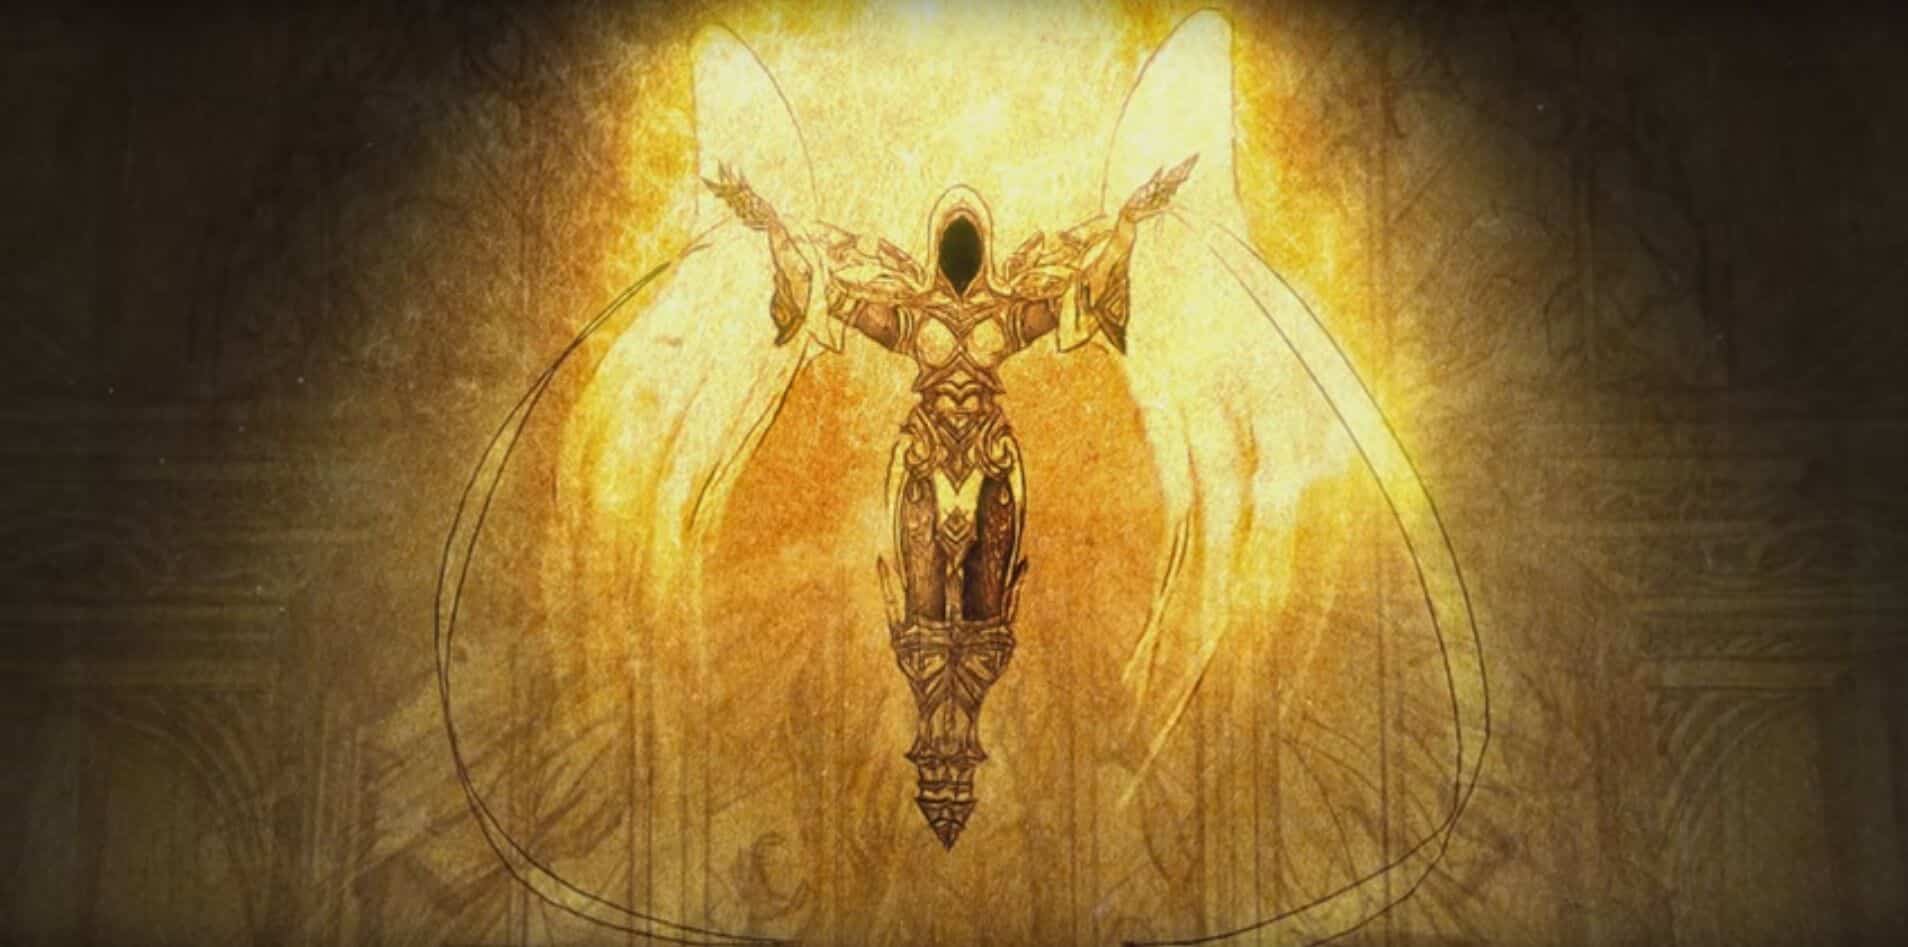 Diablo illustrated angel raises her hands to heaven